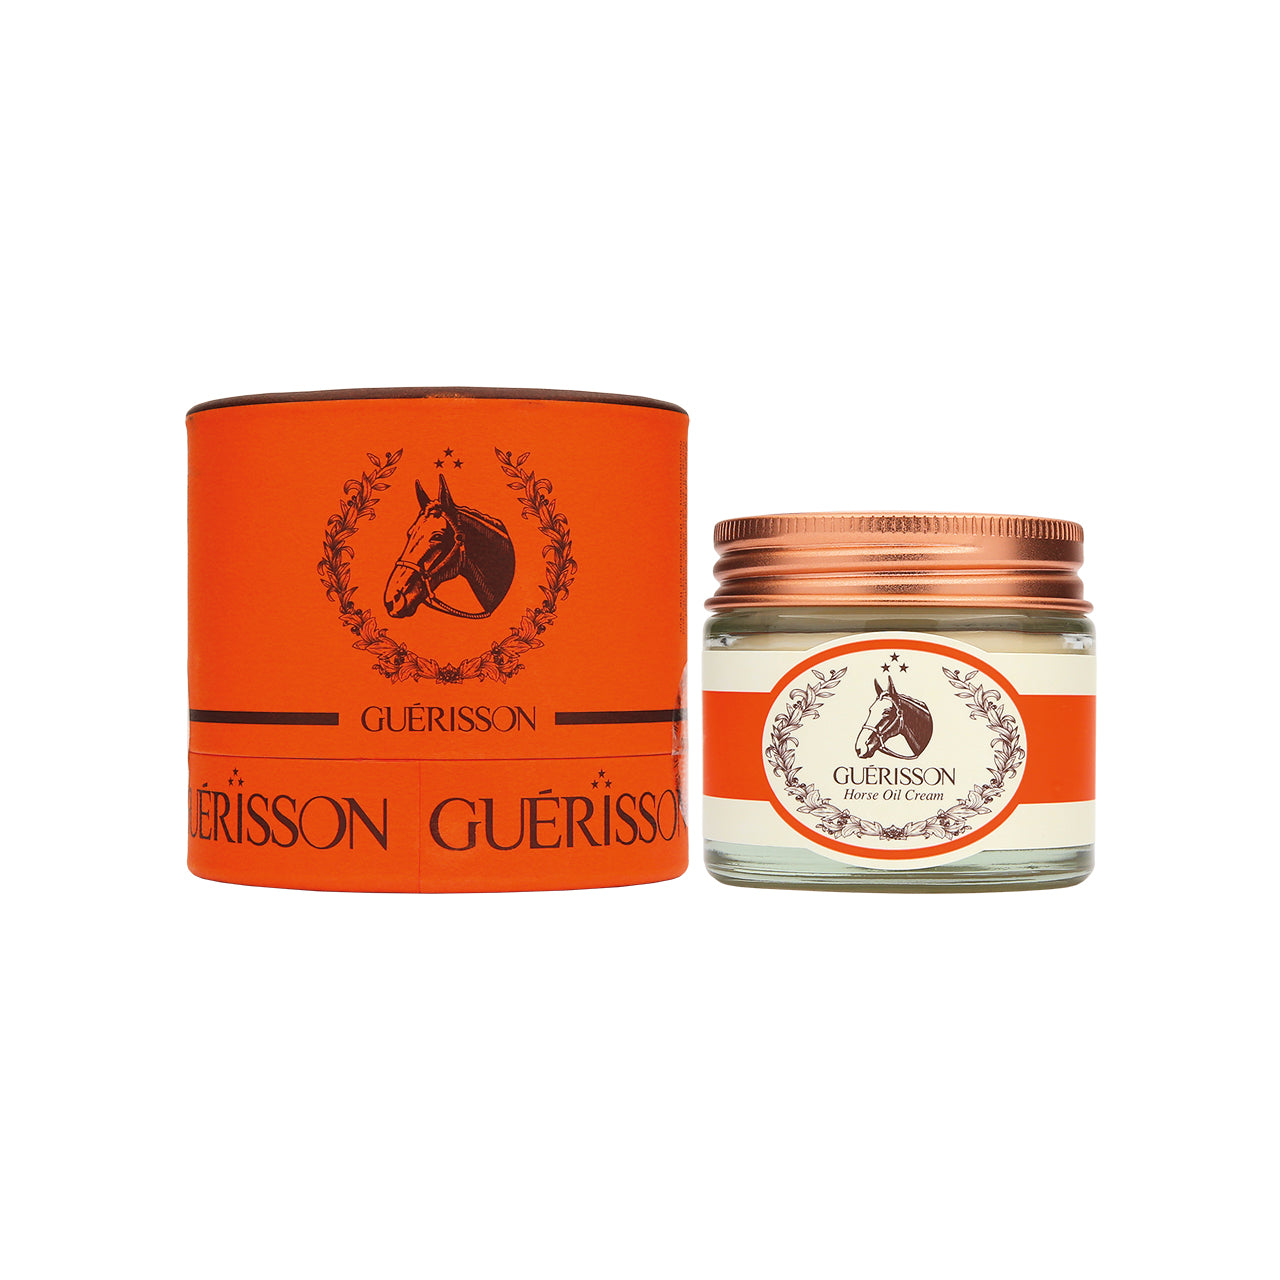 Guerisson 9 Complex Horse Oil Cream 70G | Sasa Global eShop